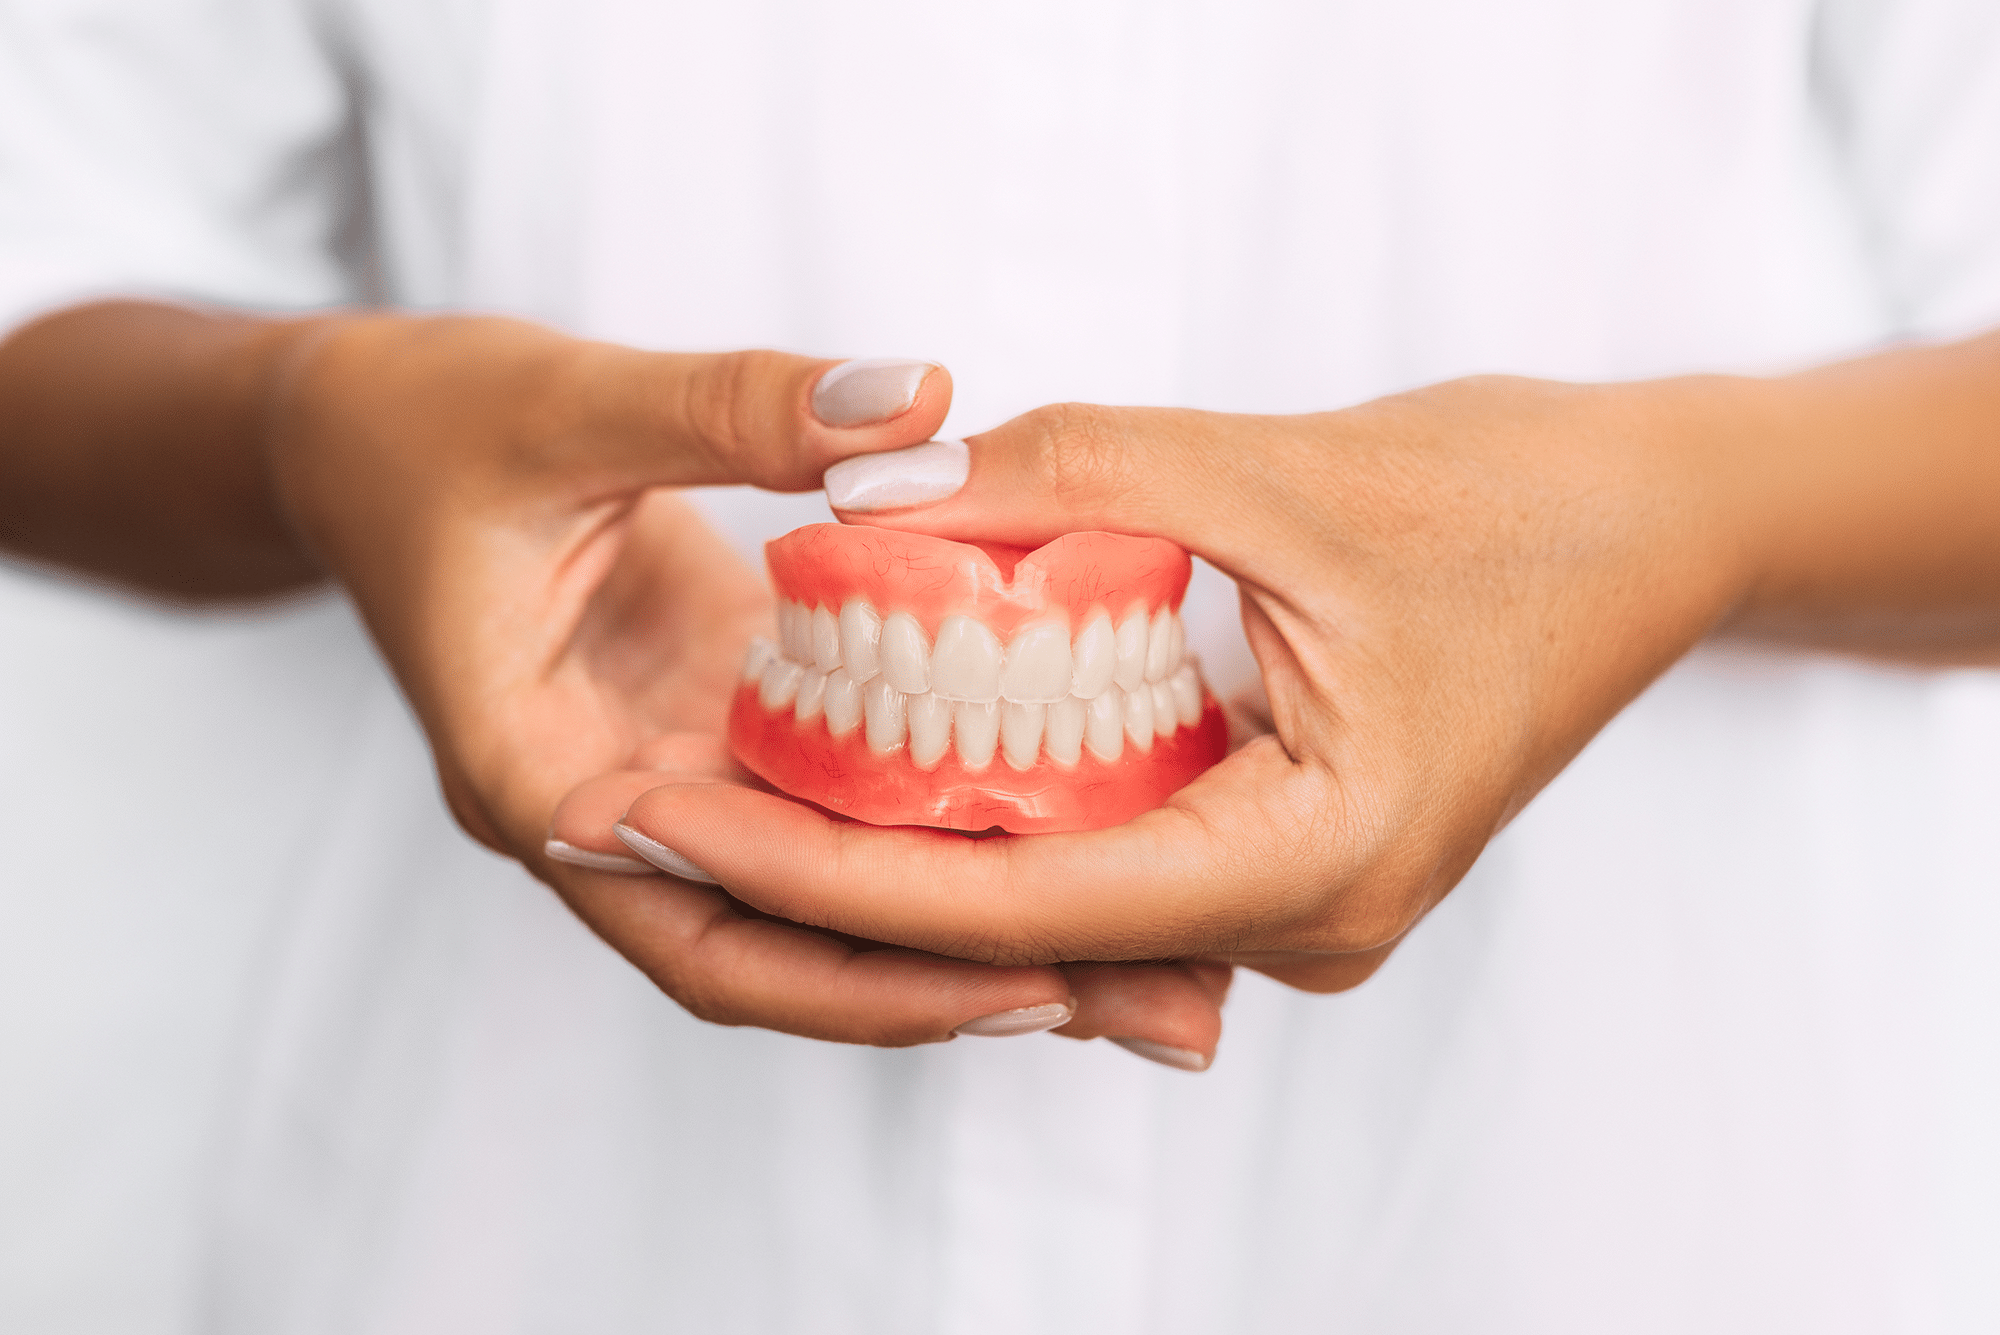 Different types of Dentures aspen dental dentist in cherry creek denver co